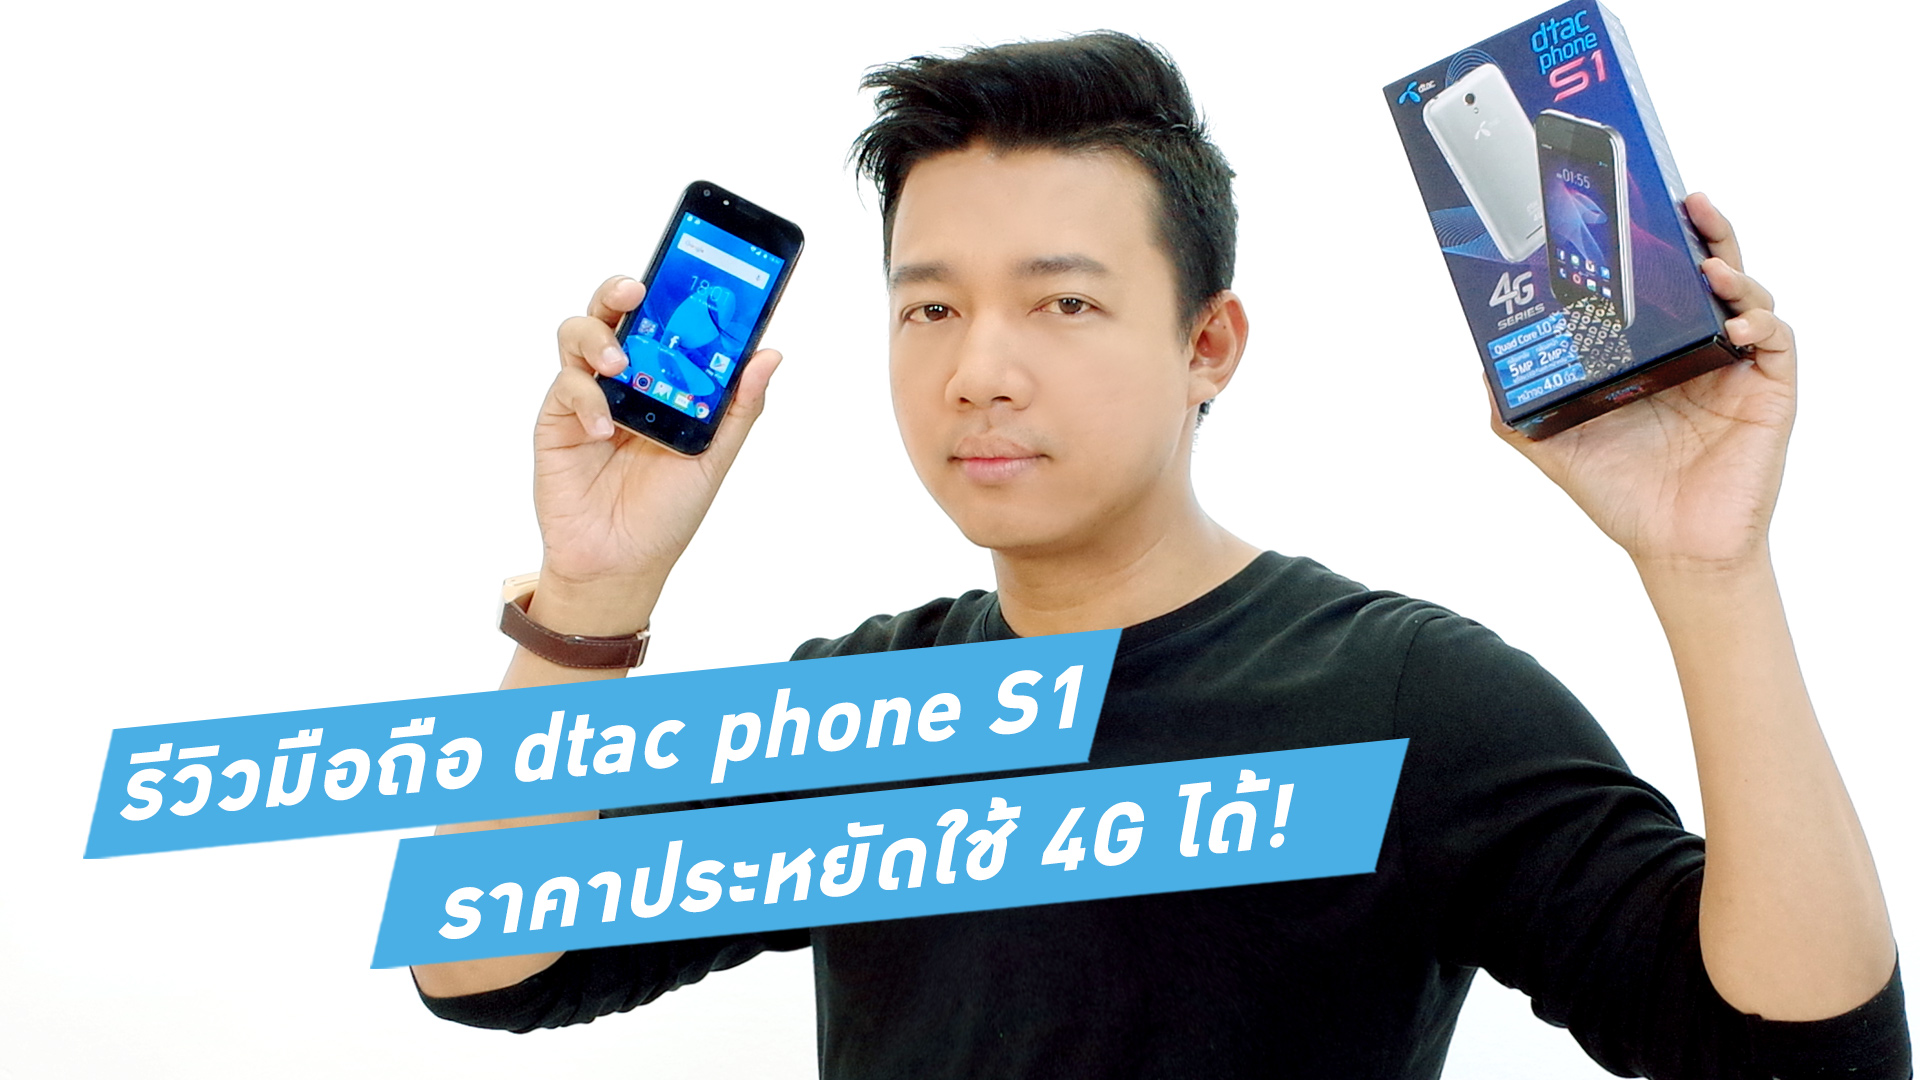 รีวิว dtac Phone S1 สมาร์ทโฟนราคา 2,490 บาทที่ใช้ 4G ได้